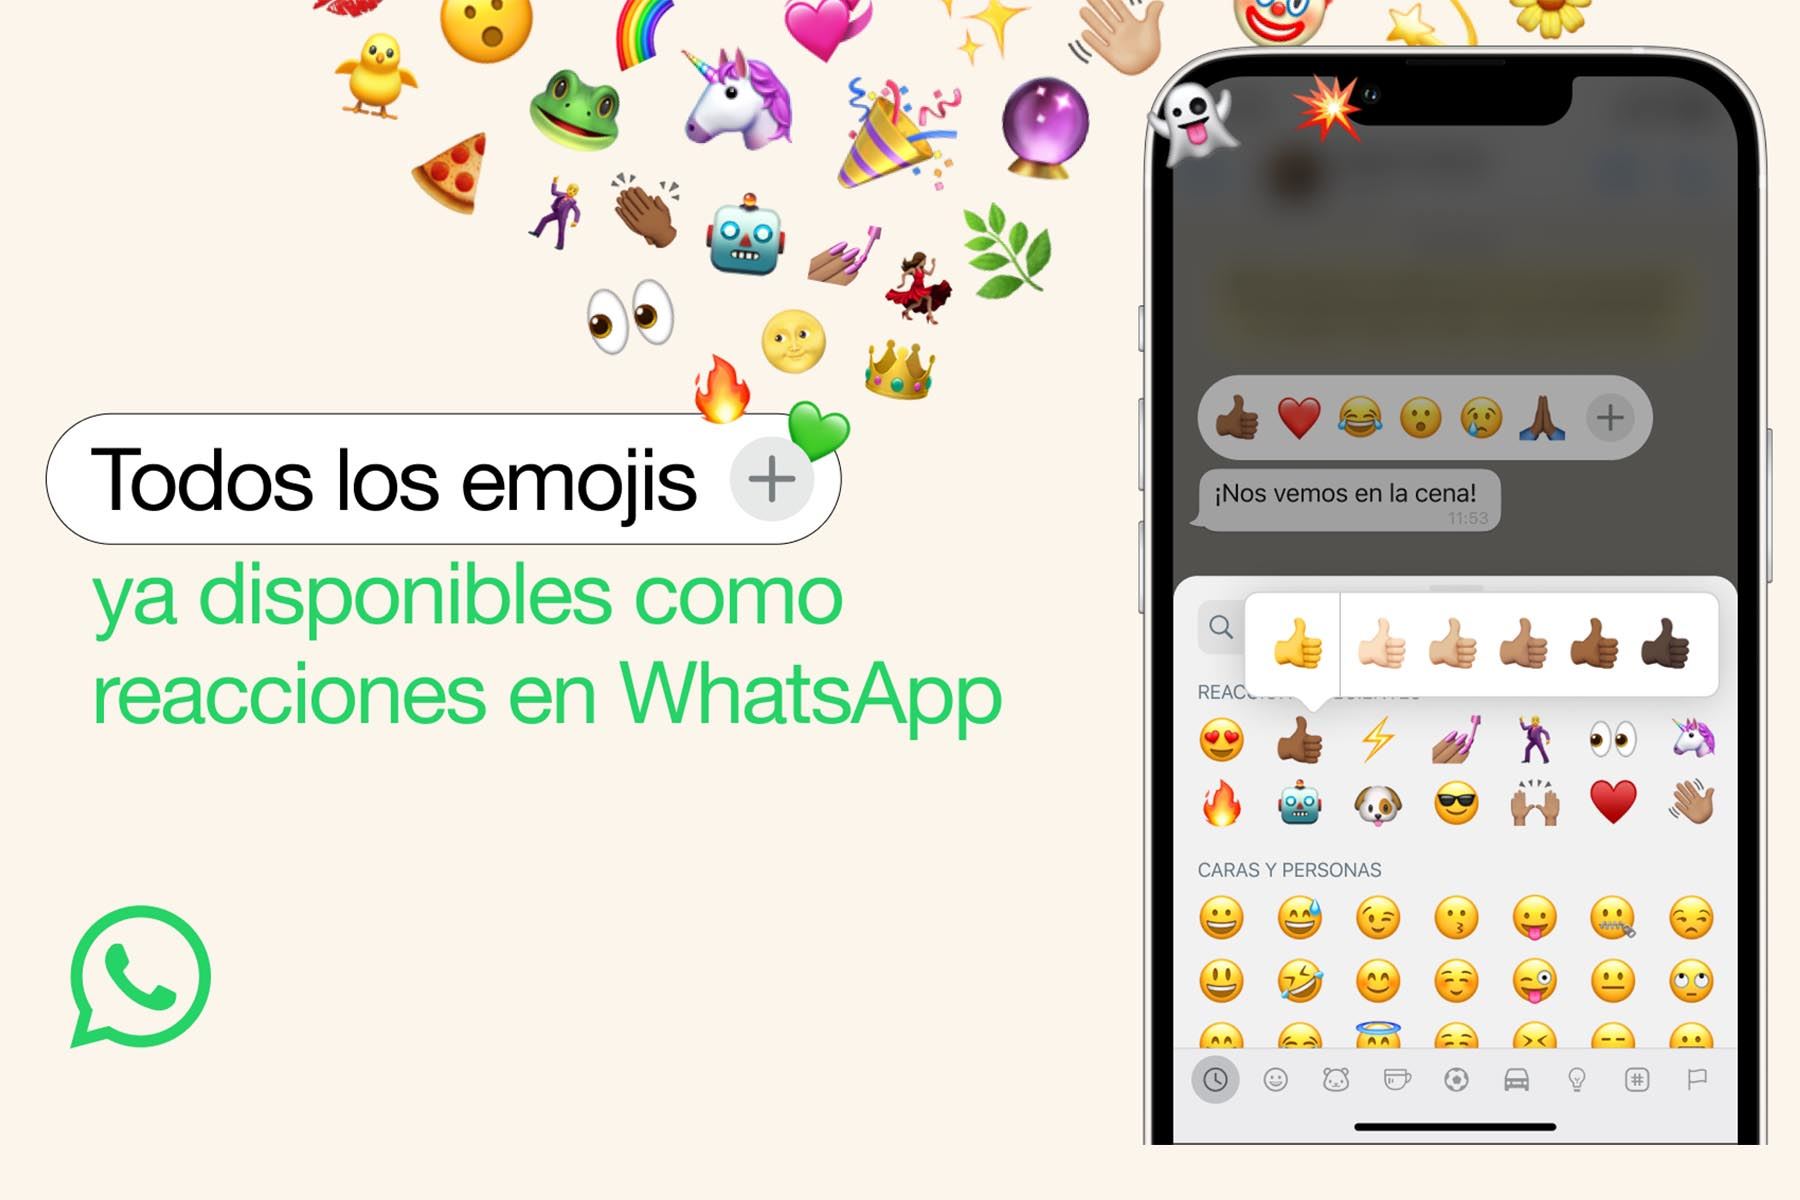 Las personas ahora podrán usar cualquier emoji para reaccionar a un mensaje en WhatsApp. Foto: Meta